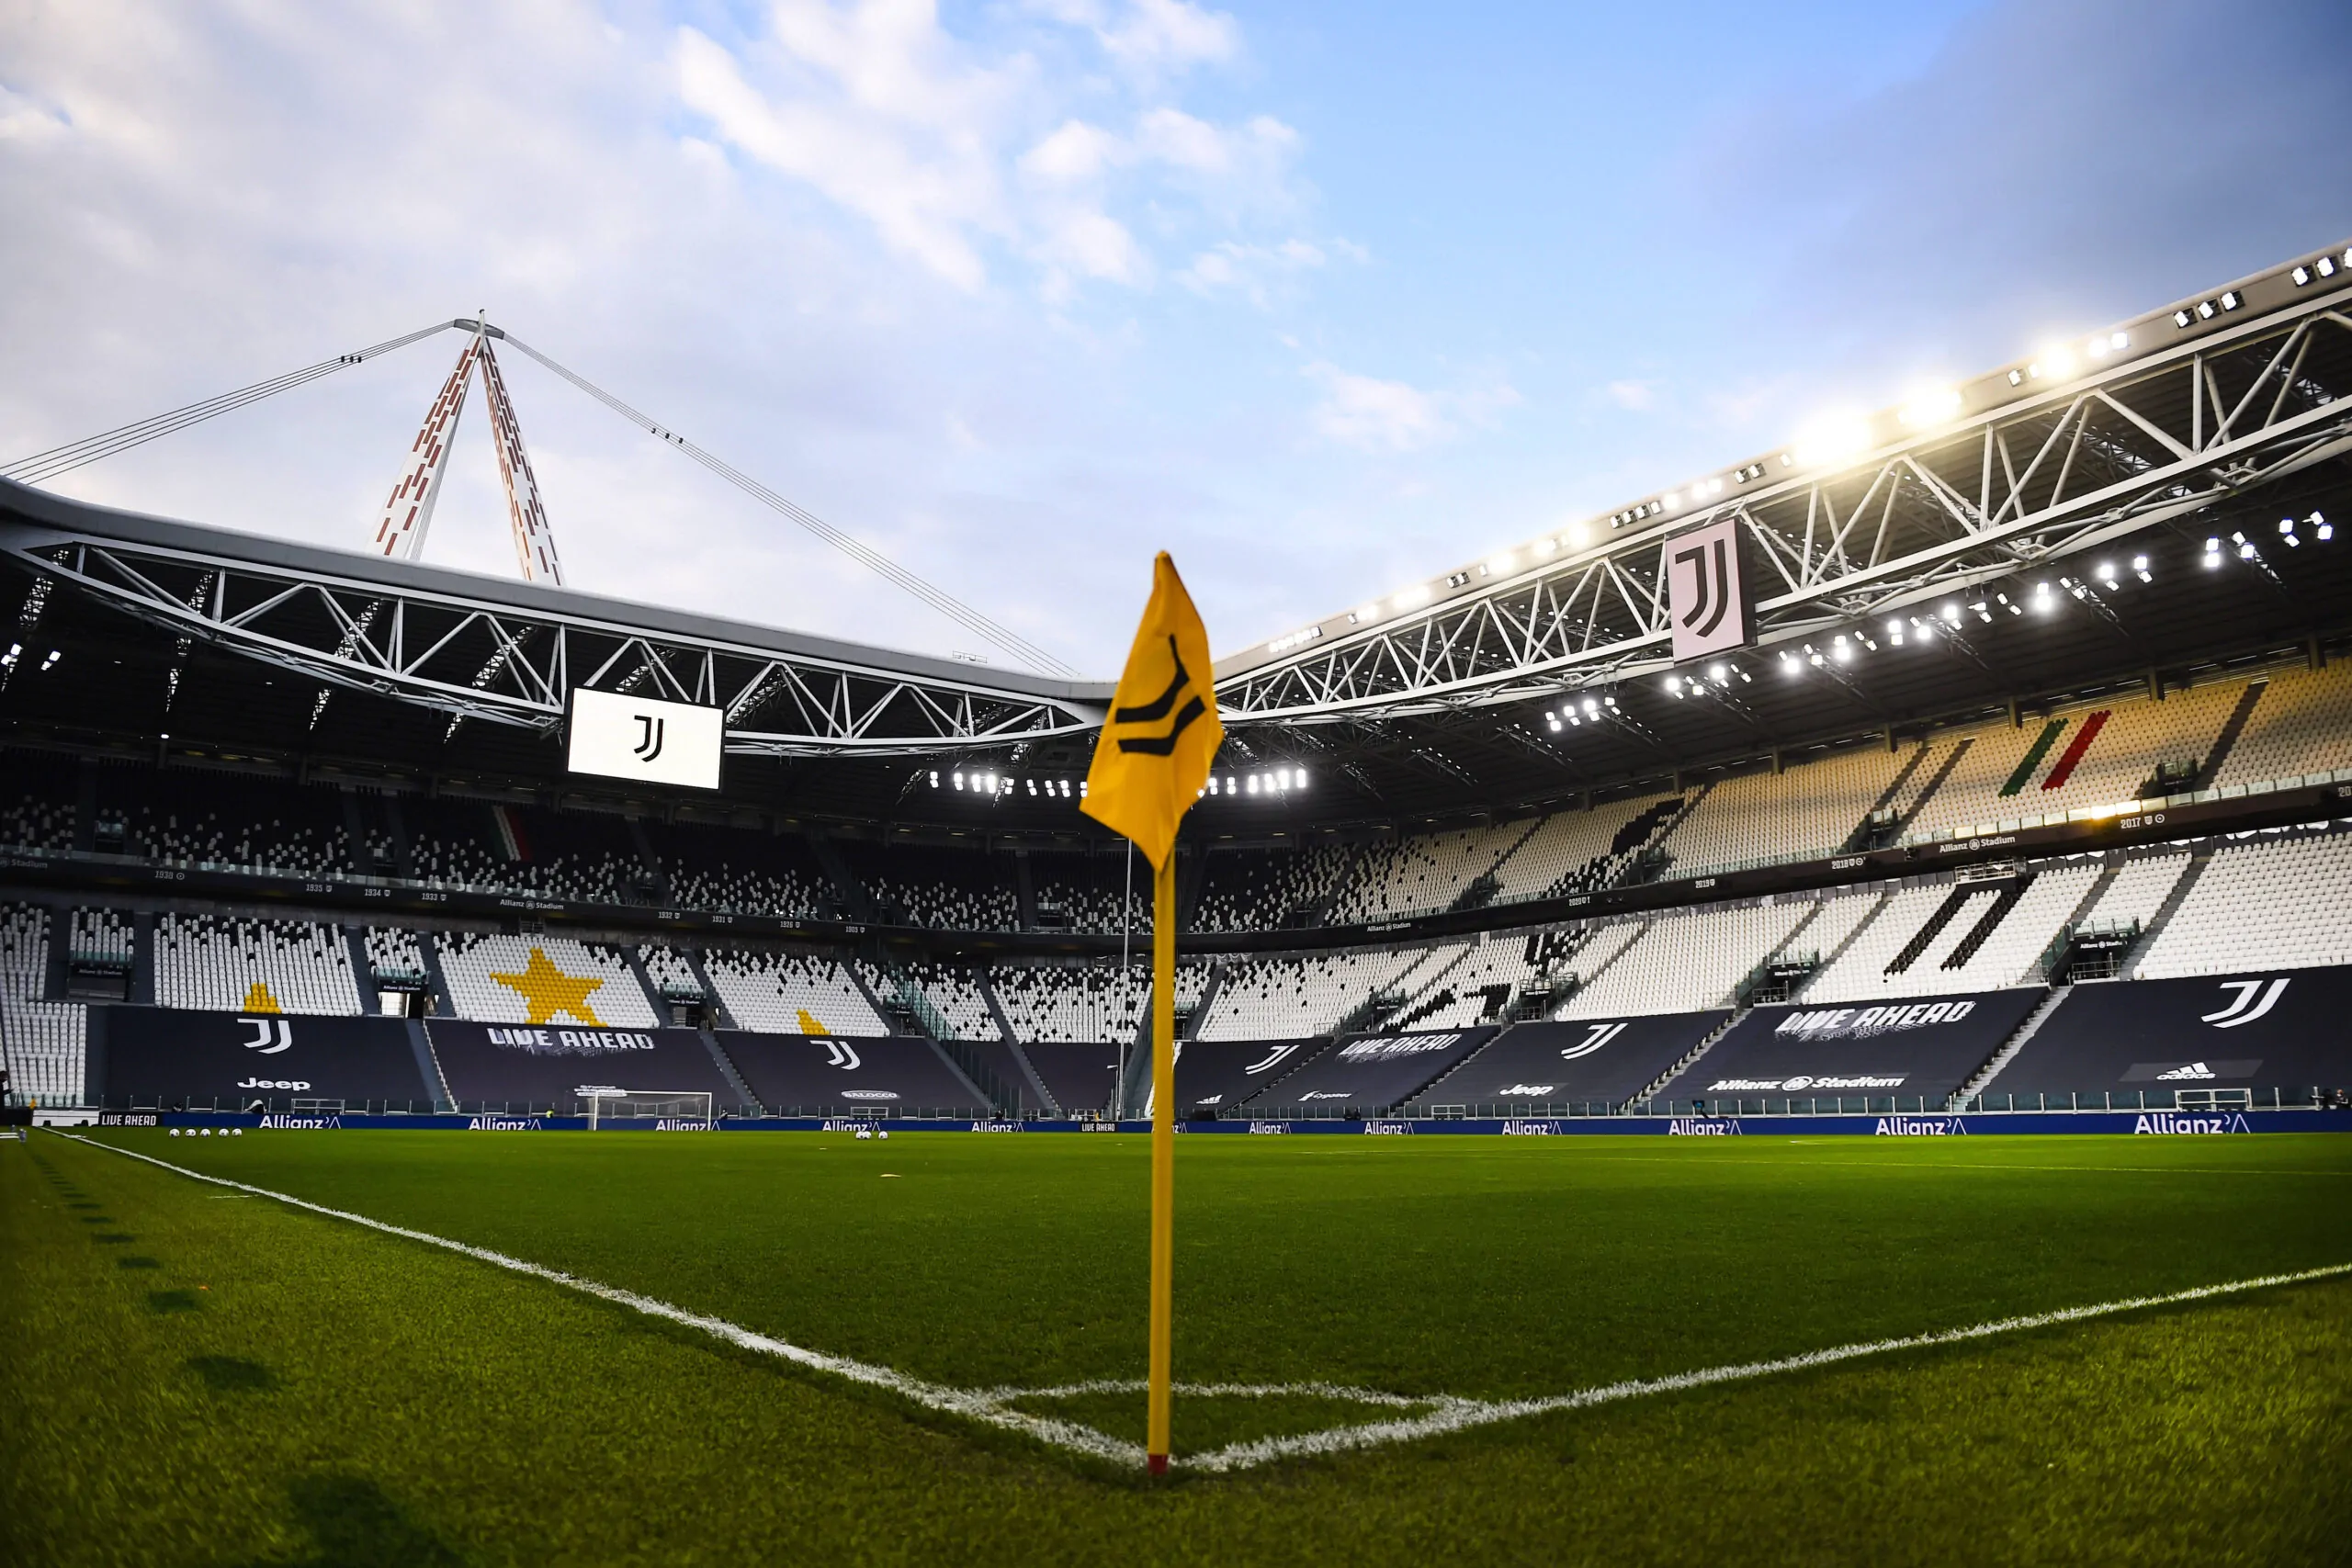 Allianz Stadium – Lavori in corso per il nuovo terreno di gioco